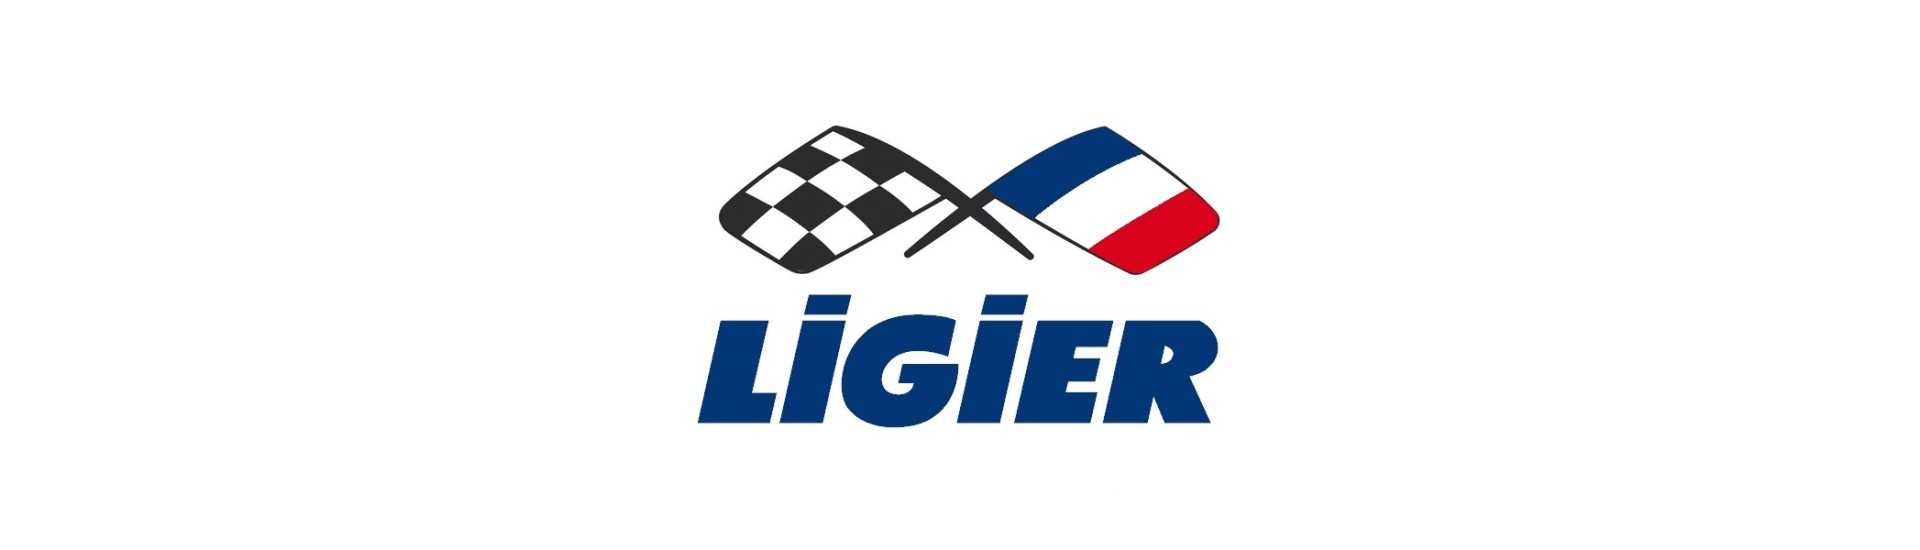 Snabb spak till bästa pris för bil utan licens Ligier